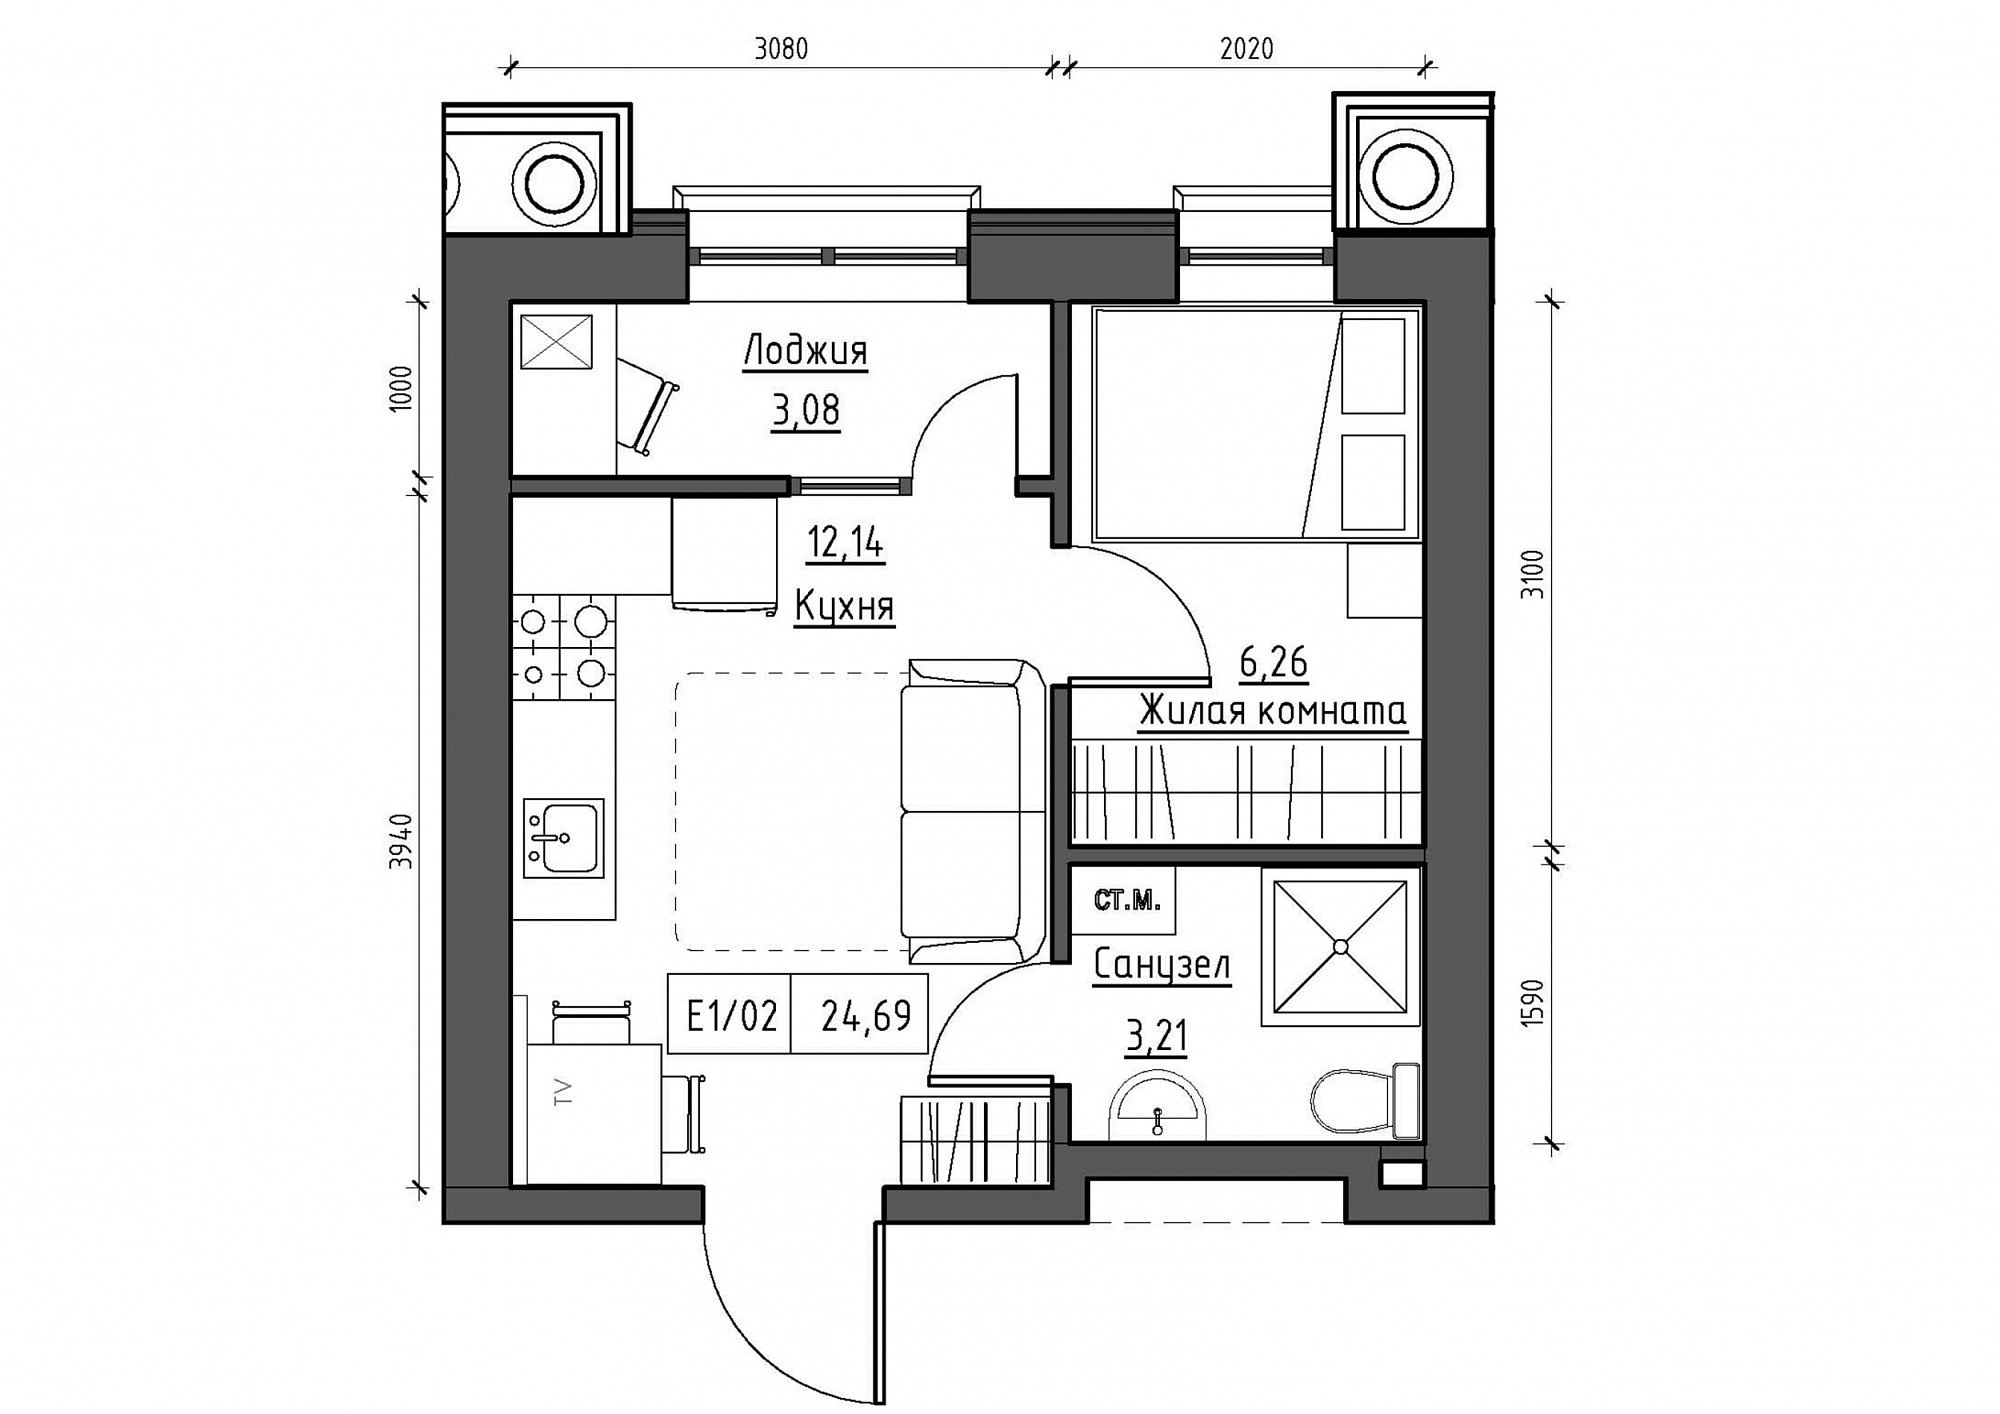 Планування 1-к квартира площею 25.11м2, KS-012-04/0002.